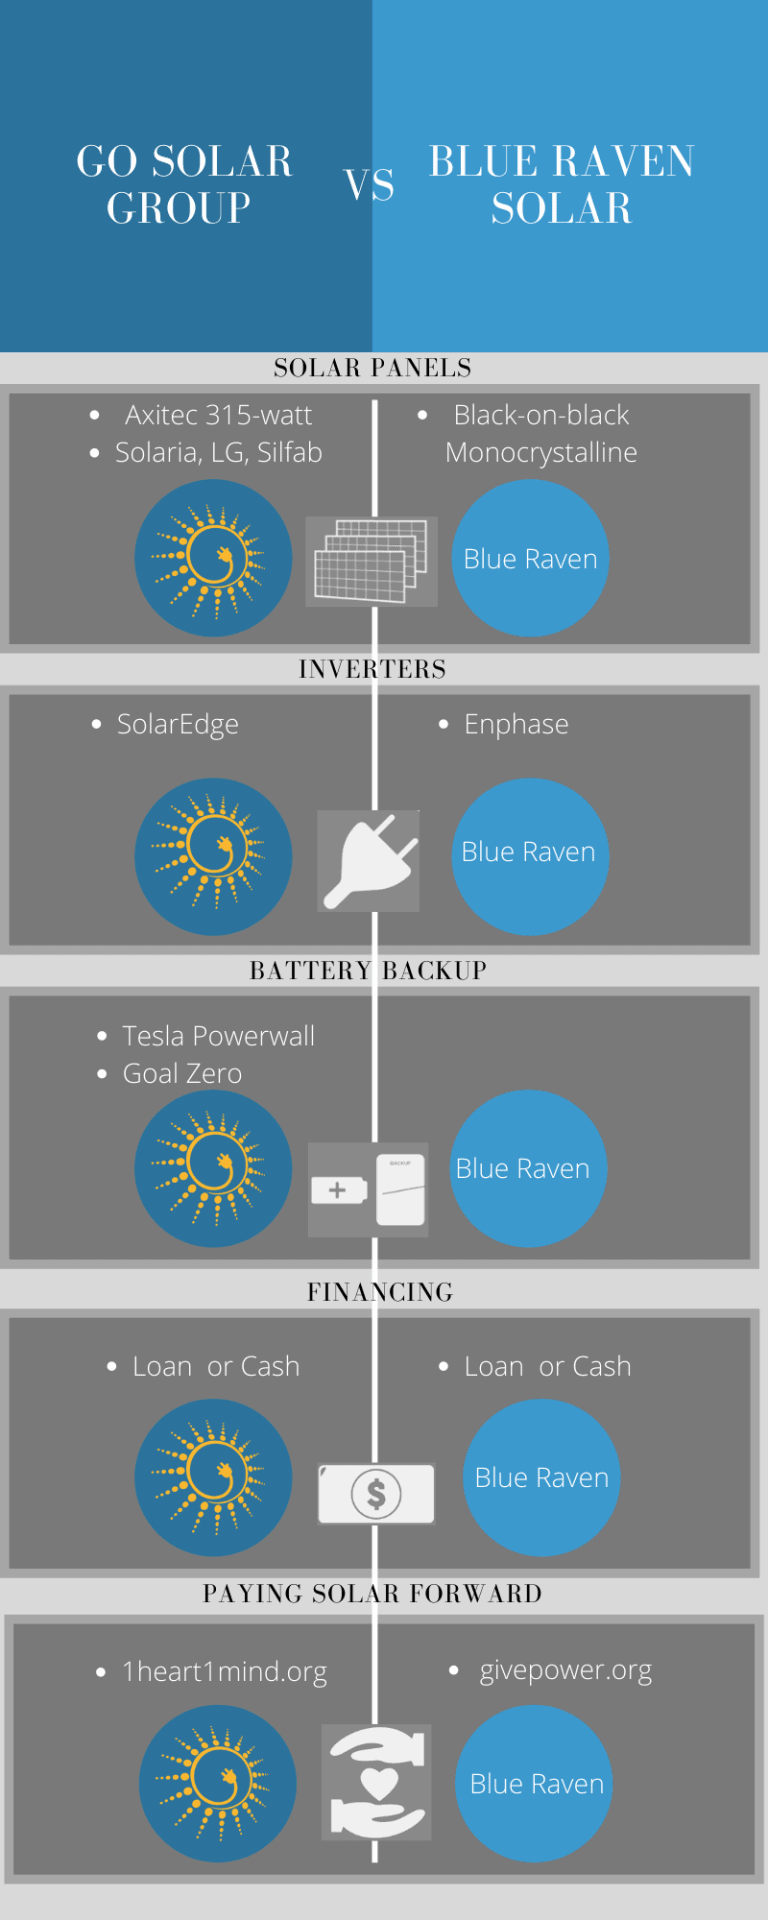 Blue Raven Solar comparison